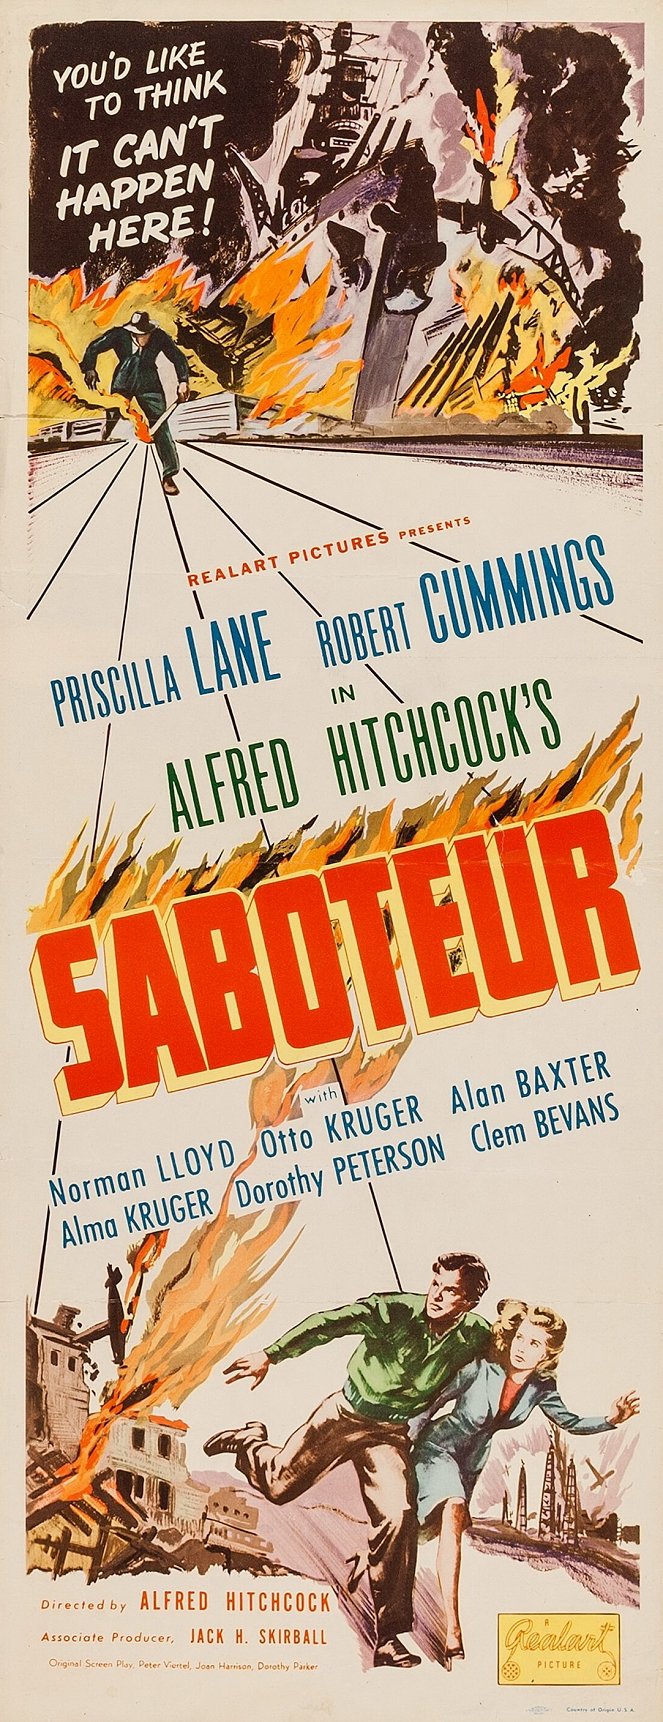 Sabotaż - Plakaty